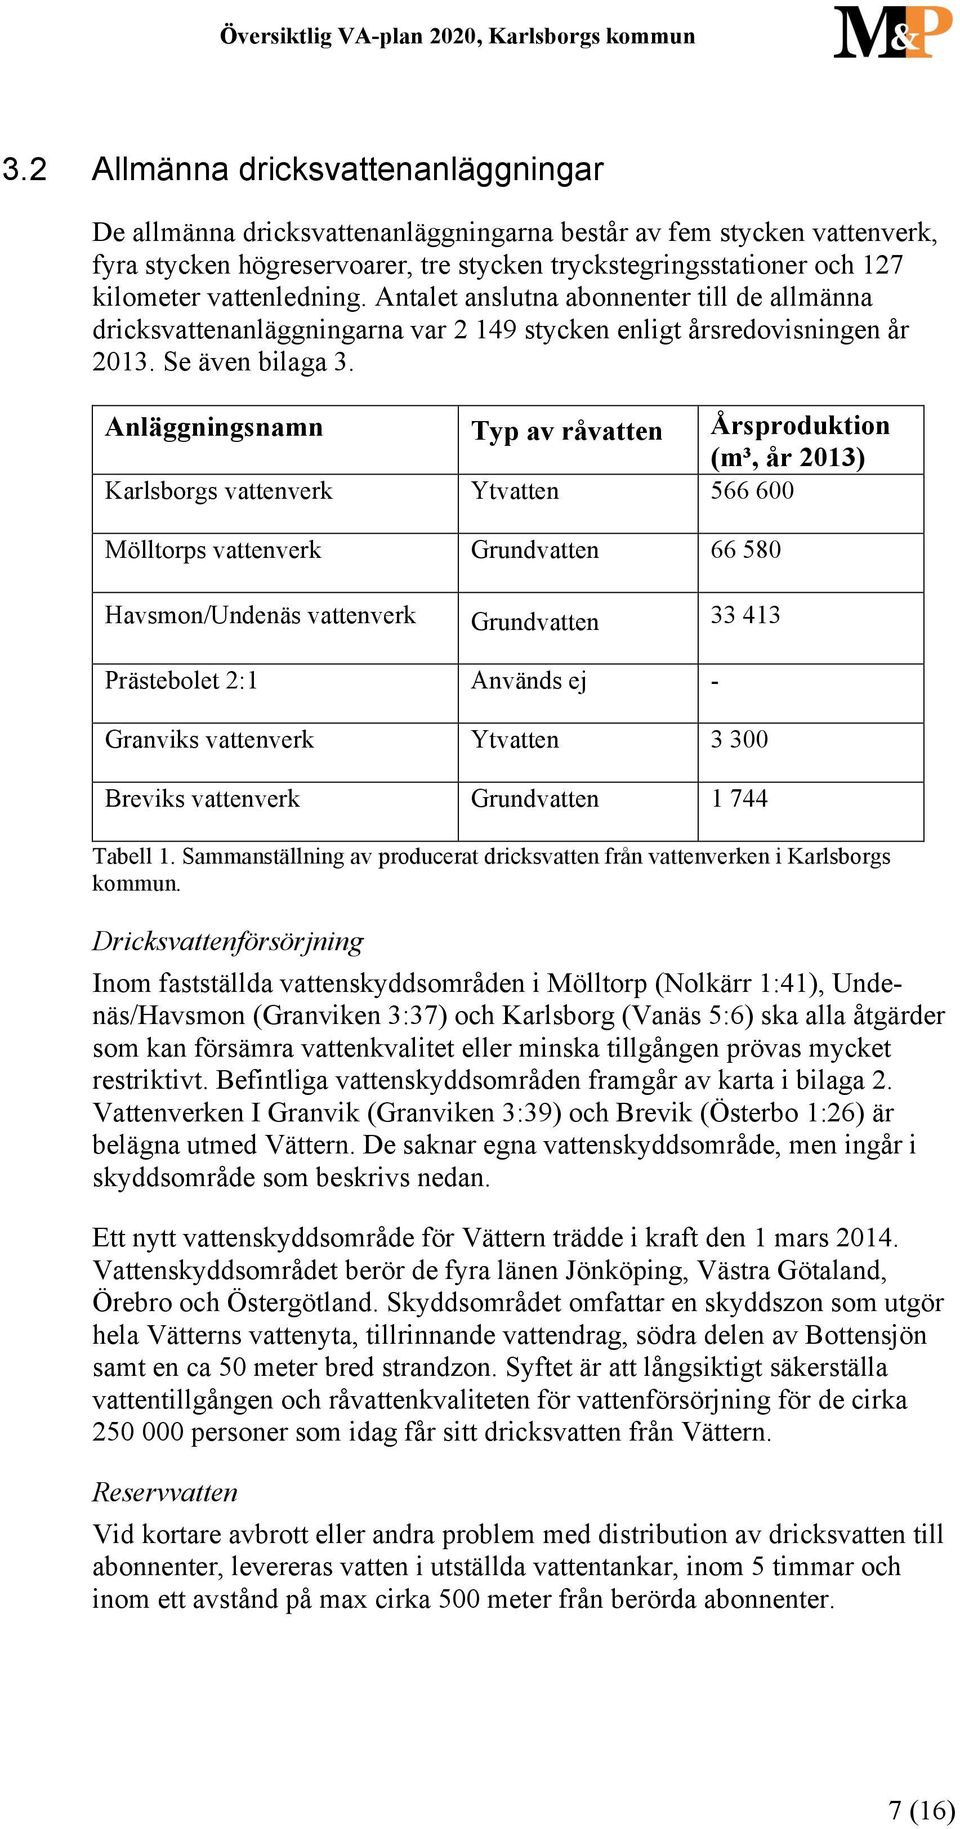 Anläggningsnamn Typ av råvatten Årsproduktion (m³, år 2013) Karlsborgs vattenverk Ytvatten 566 600 Mölltorps vattenverk Grundvatten 66 580 Havsmon/Undenäs vattenverk Grundvatten 33 413 Prästebolet